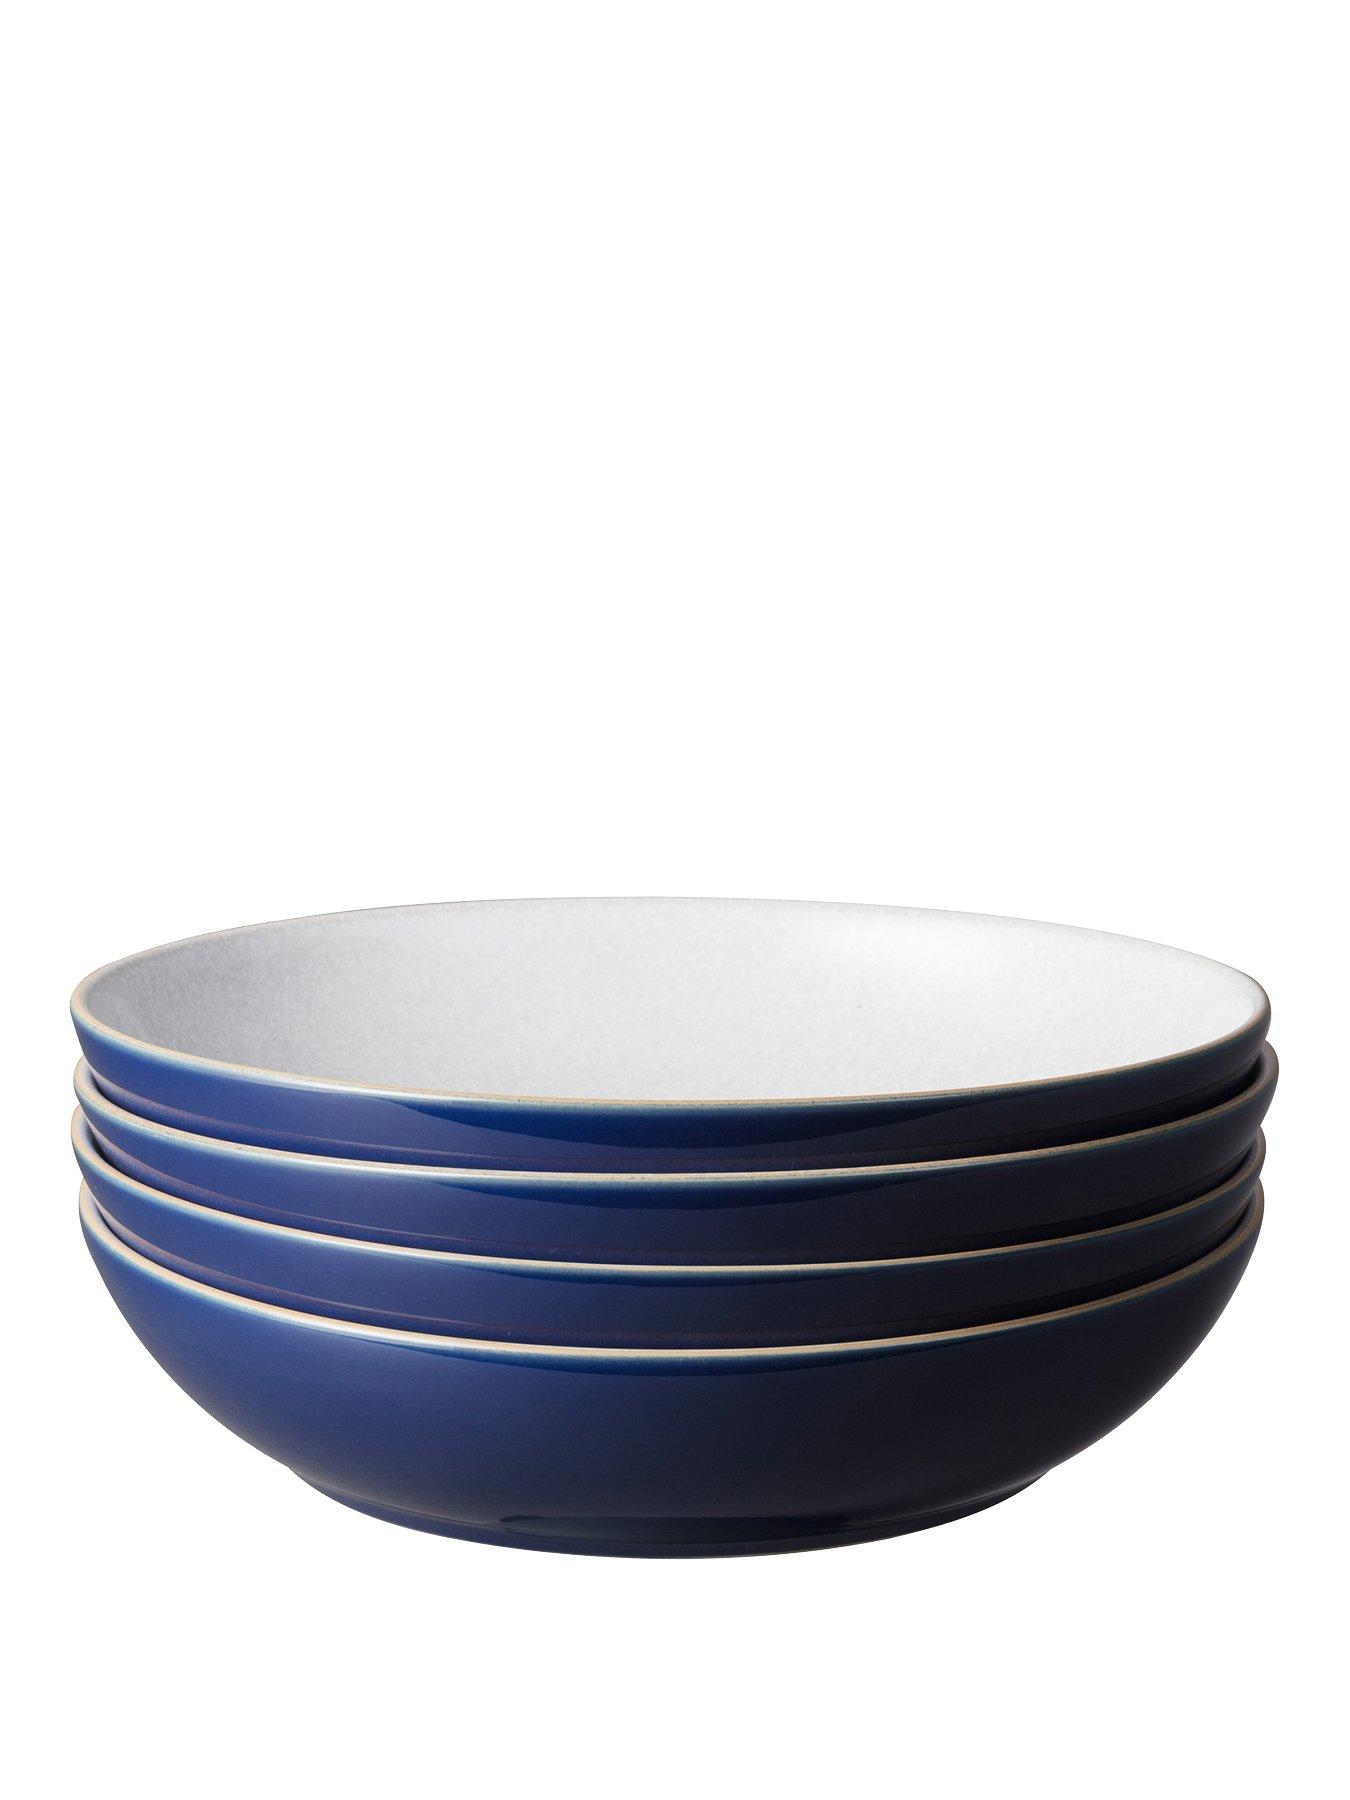 NEW Denby Studio Pasta Bowls Blue Set 4pce